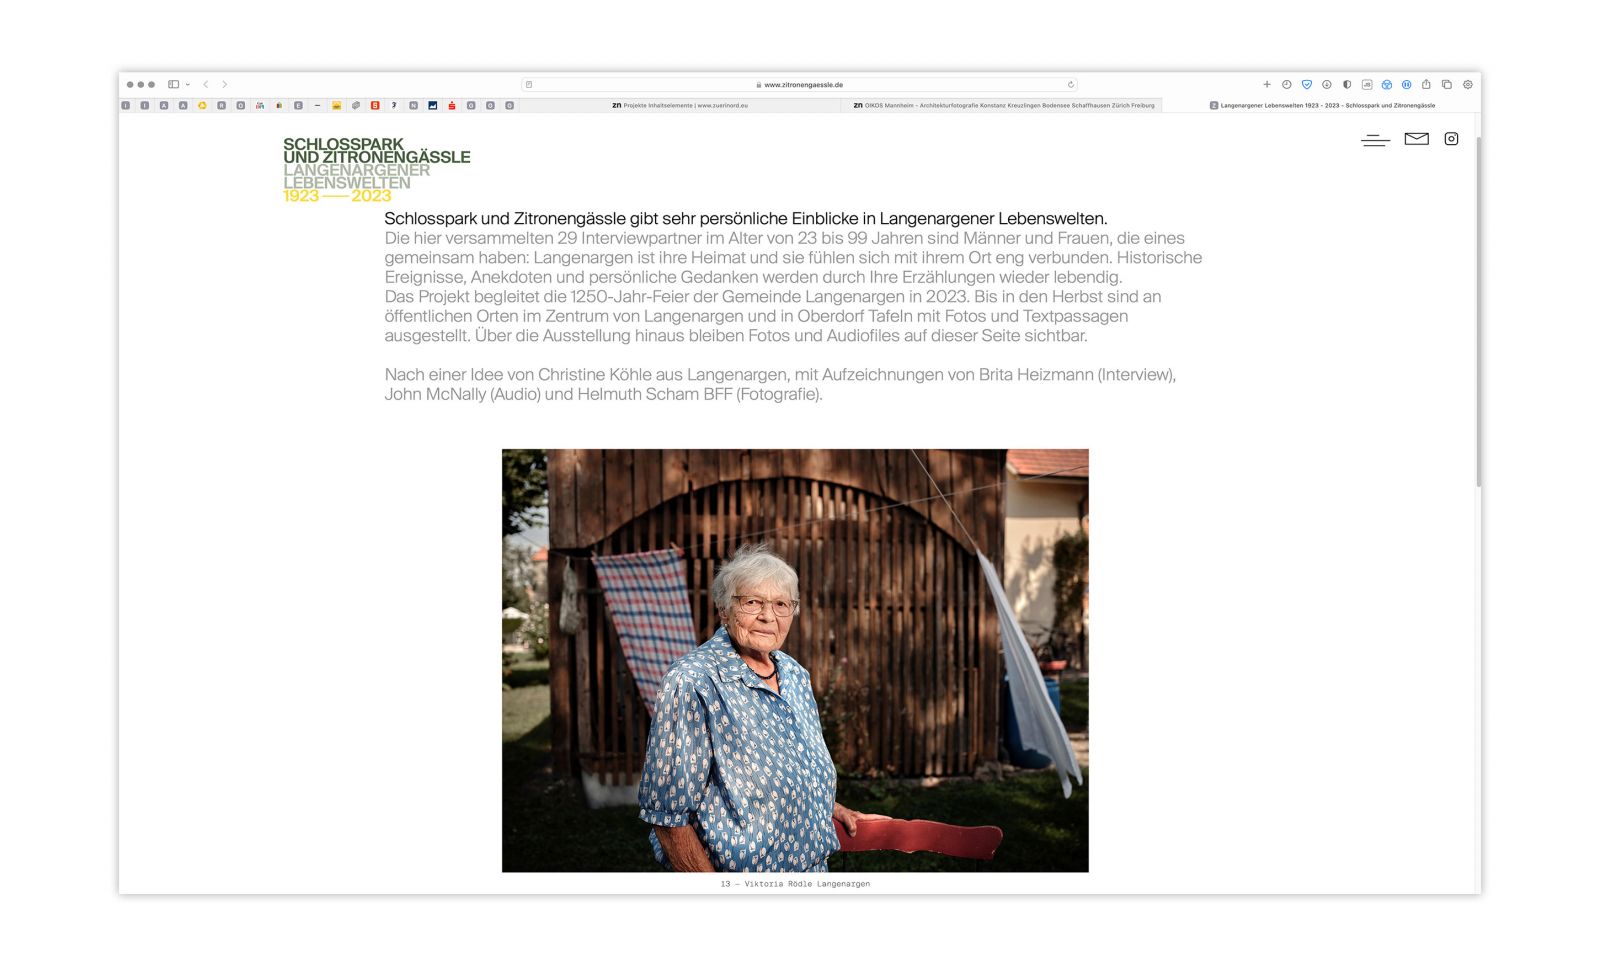 Schlosspark und Zitronengaessle | Bürgerprojekt für Langenargen am Bodensee in 2023, nach einer Idee von Christine Köhle Langenargen